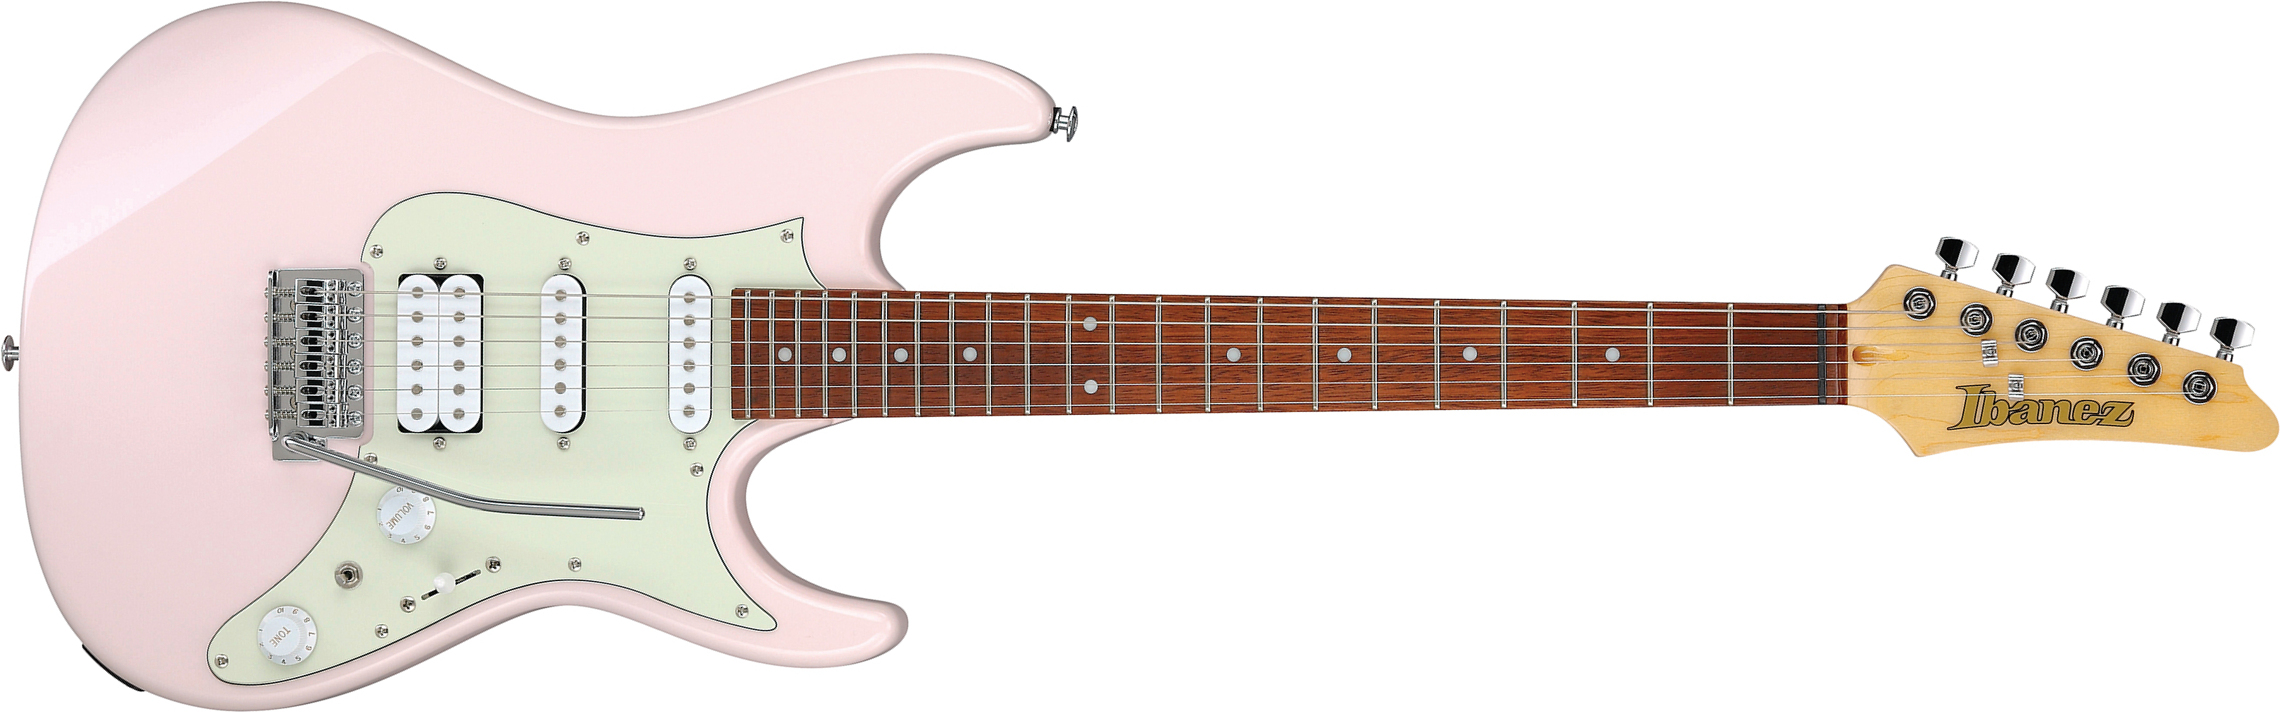 Ibanez Azes40 Ppk Standard Hss Trem Jat - Pastel Pink - Guitare Électrique Forme Str - Main picture